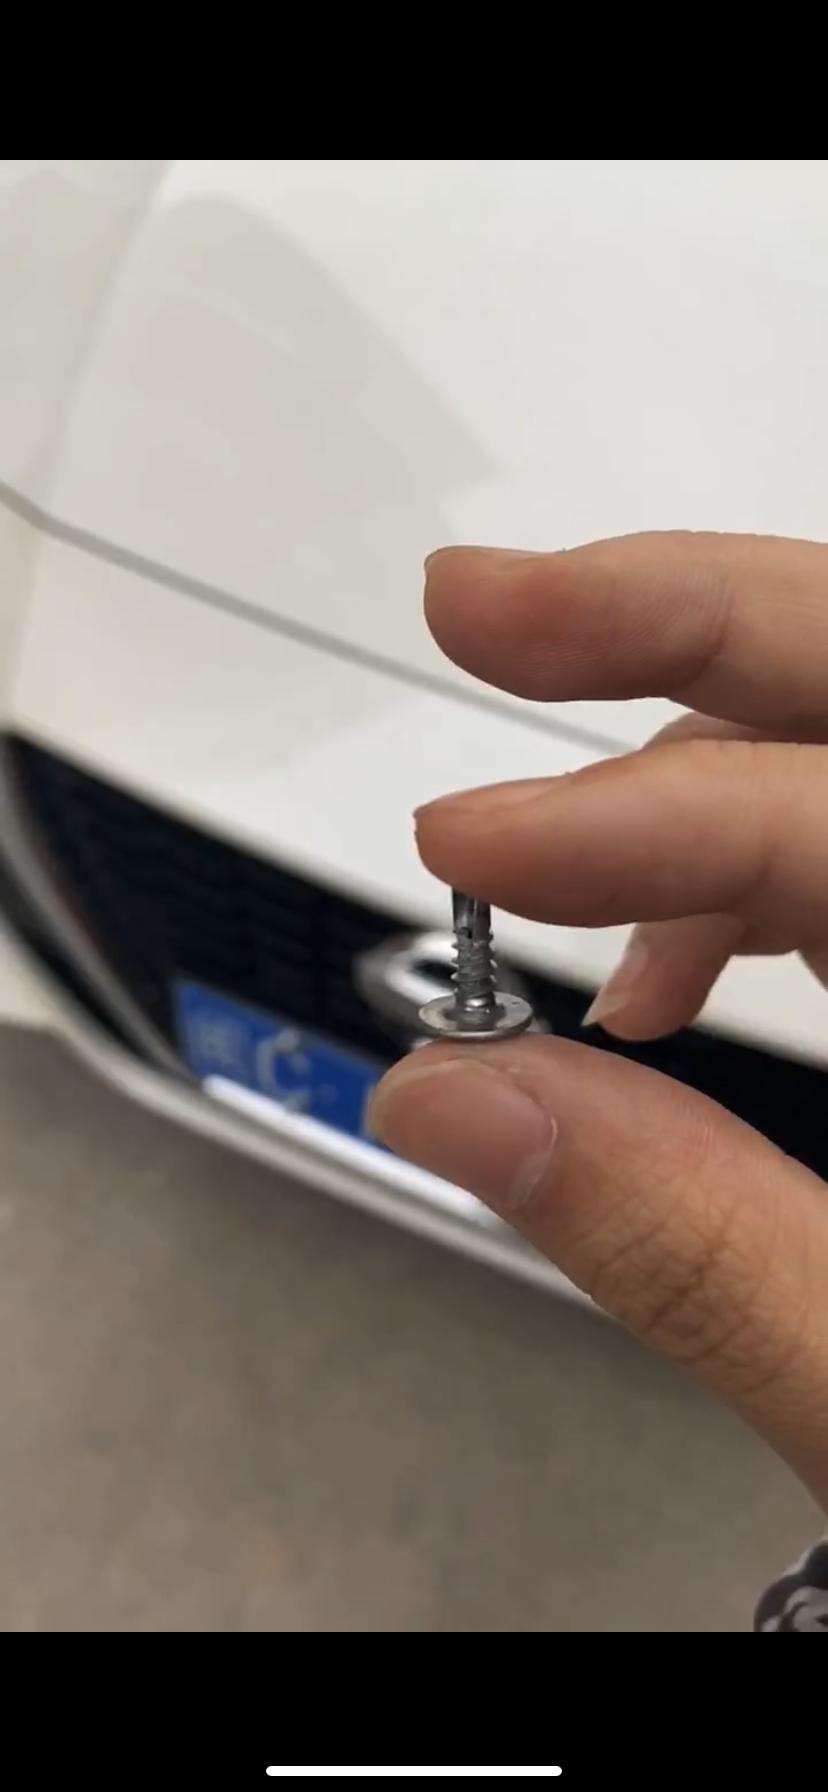 日产天籁 新车前轮扎了一颗指甲盖这么长的螺丝钉，拔掉没有漏气，这有影响吗